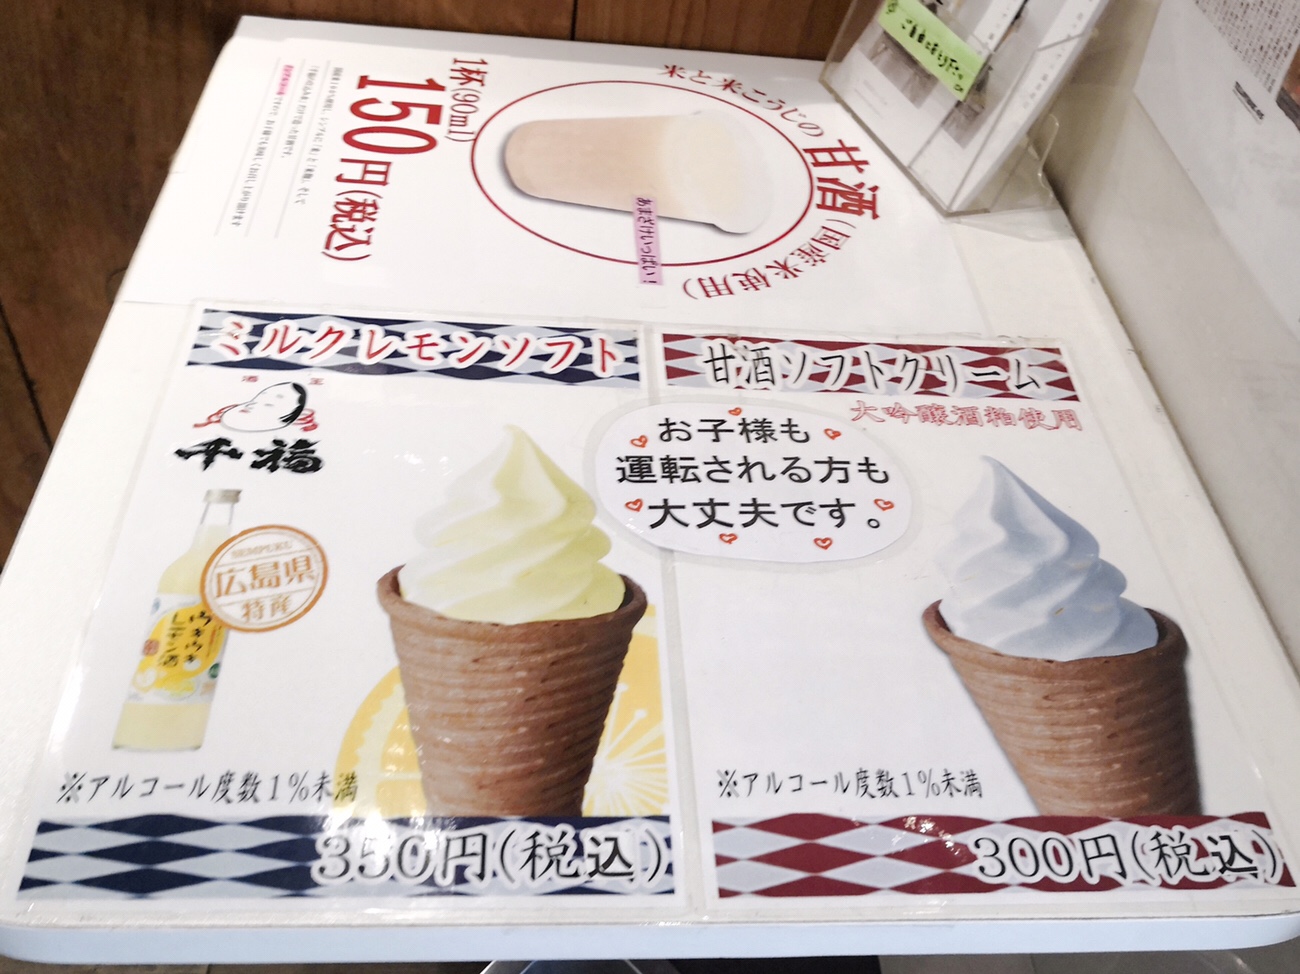 千福ソフトクリーム値段